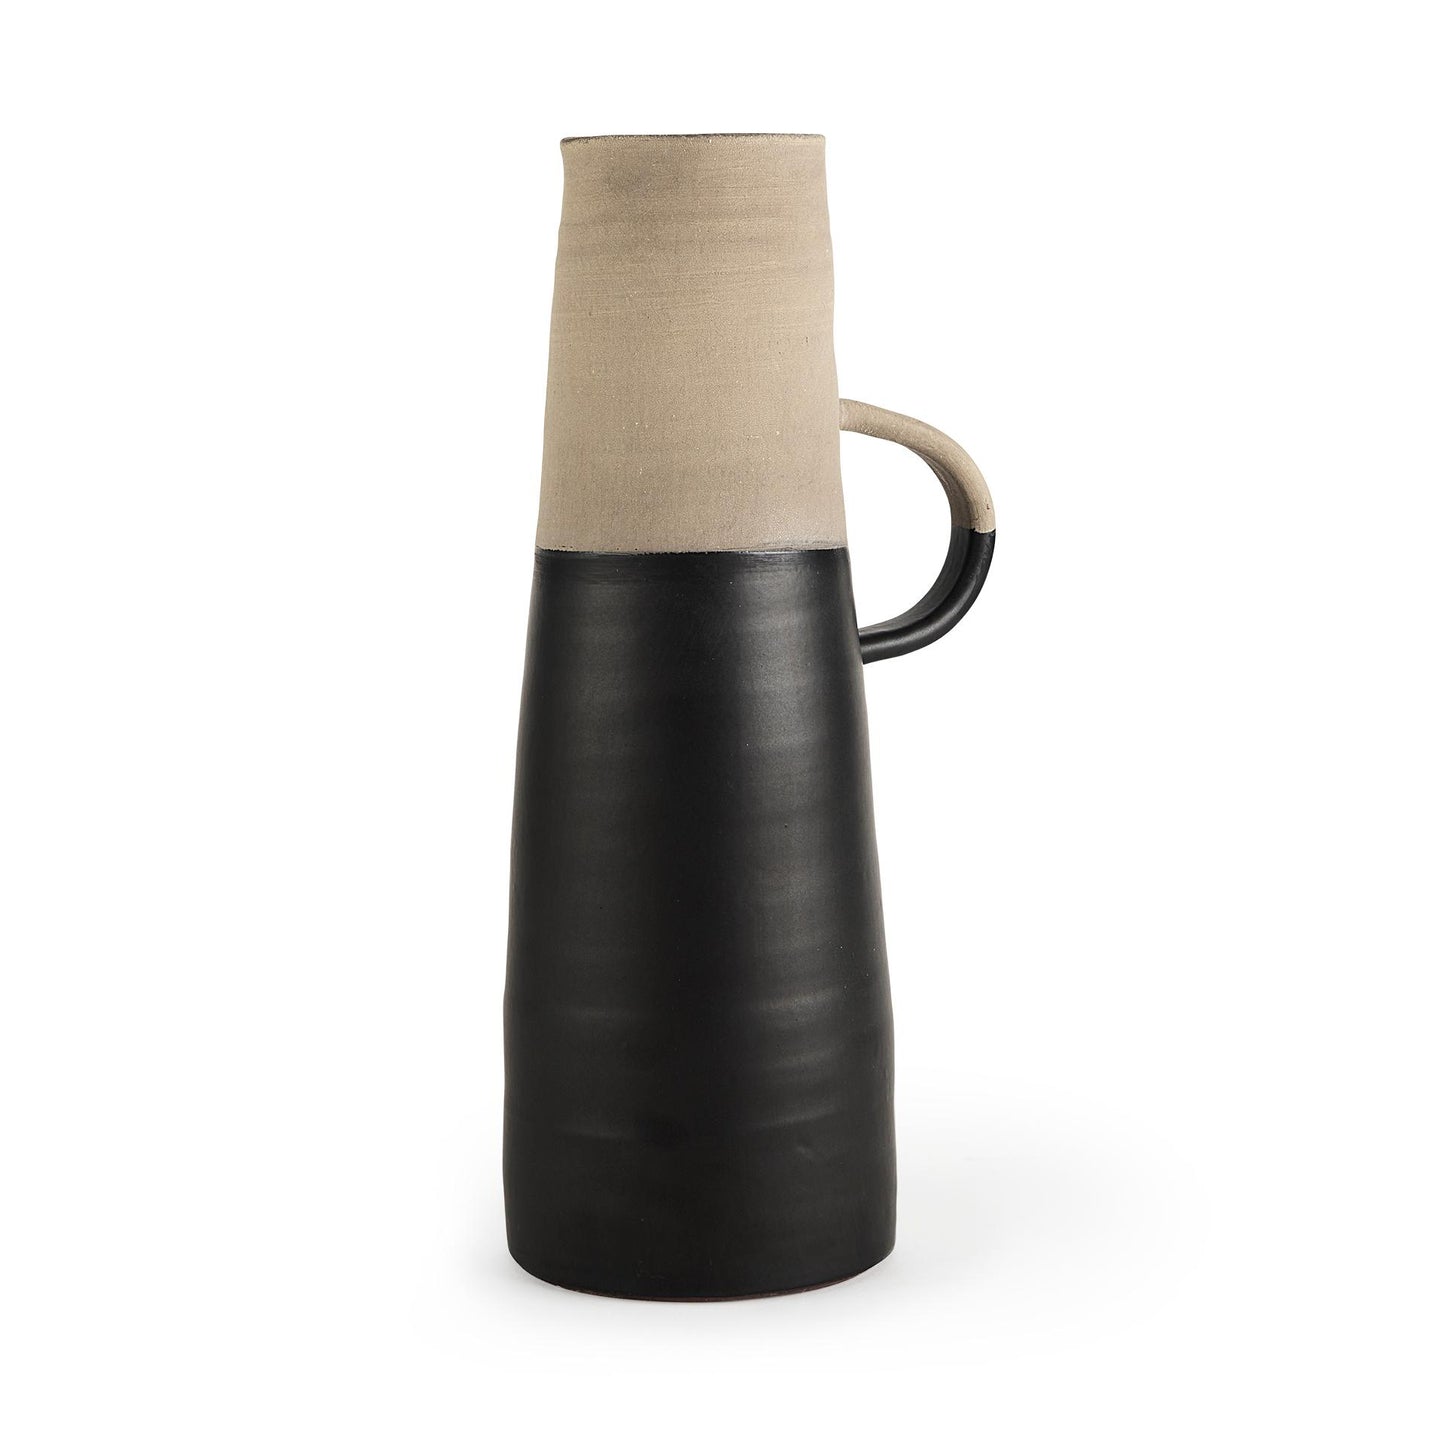 Garand Large 18.8H Two-Toned Black/Natural Ceramic Jug